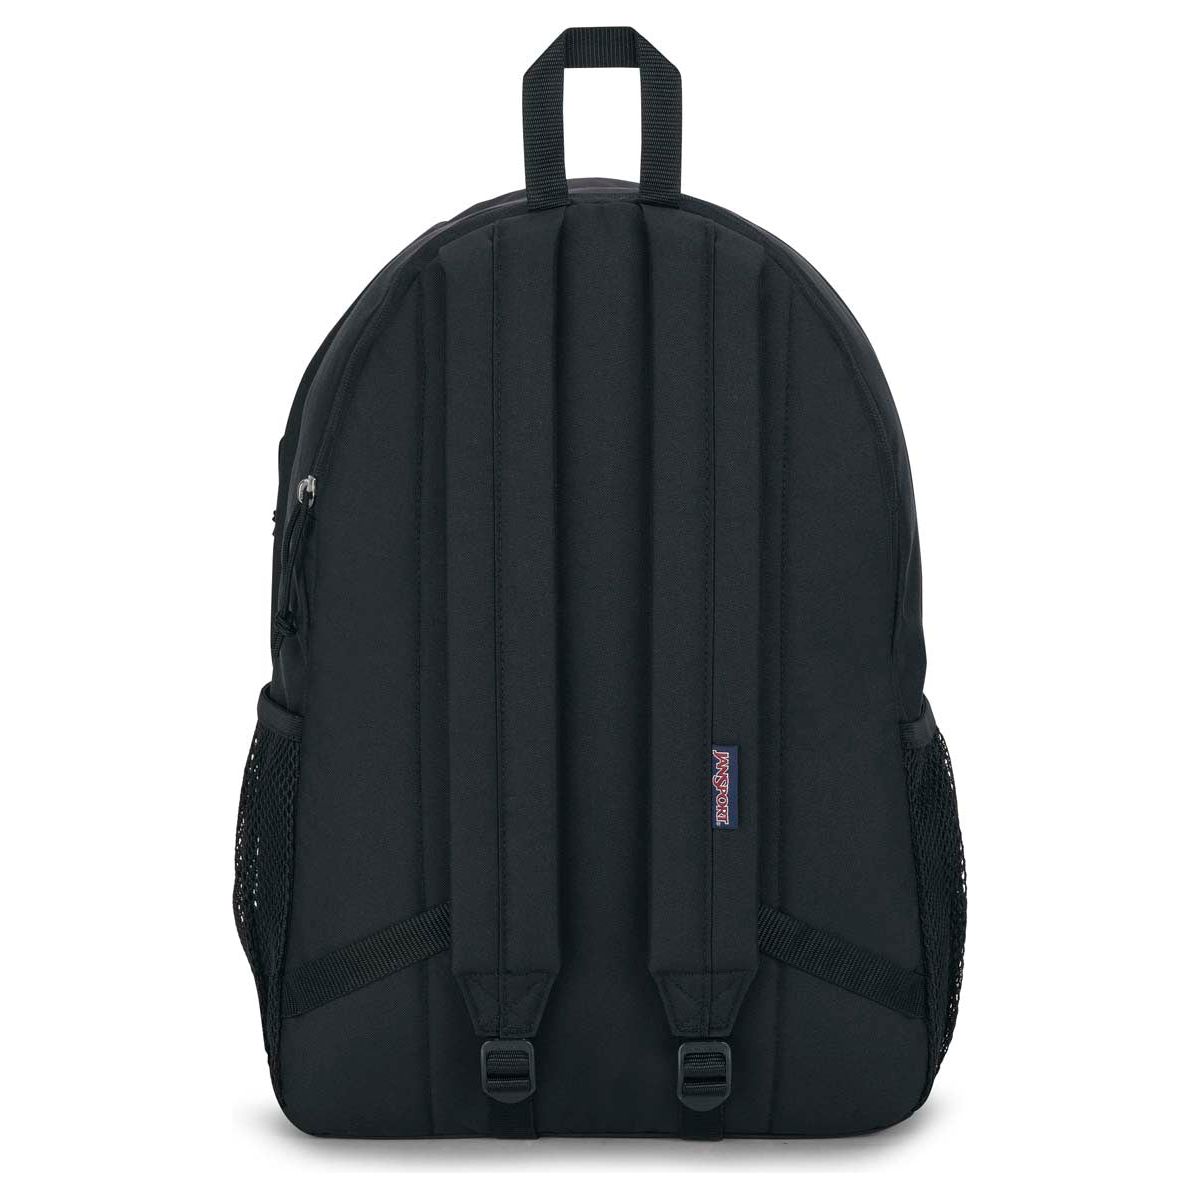 Jansport Granby Laptop Backpack - Black